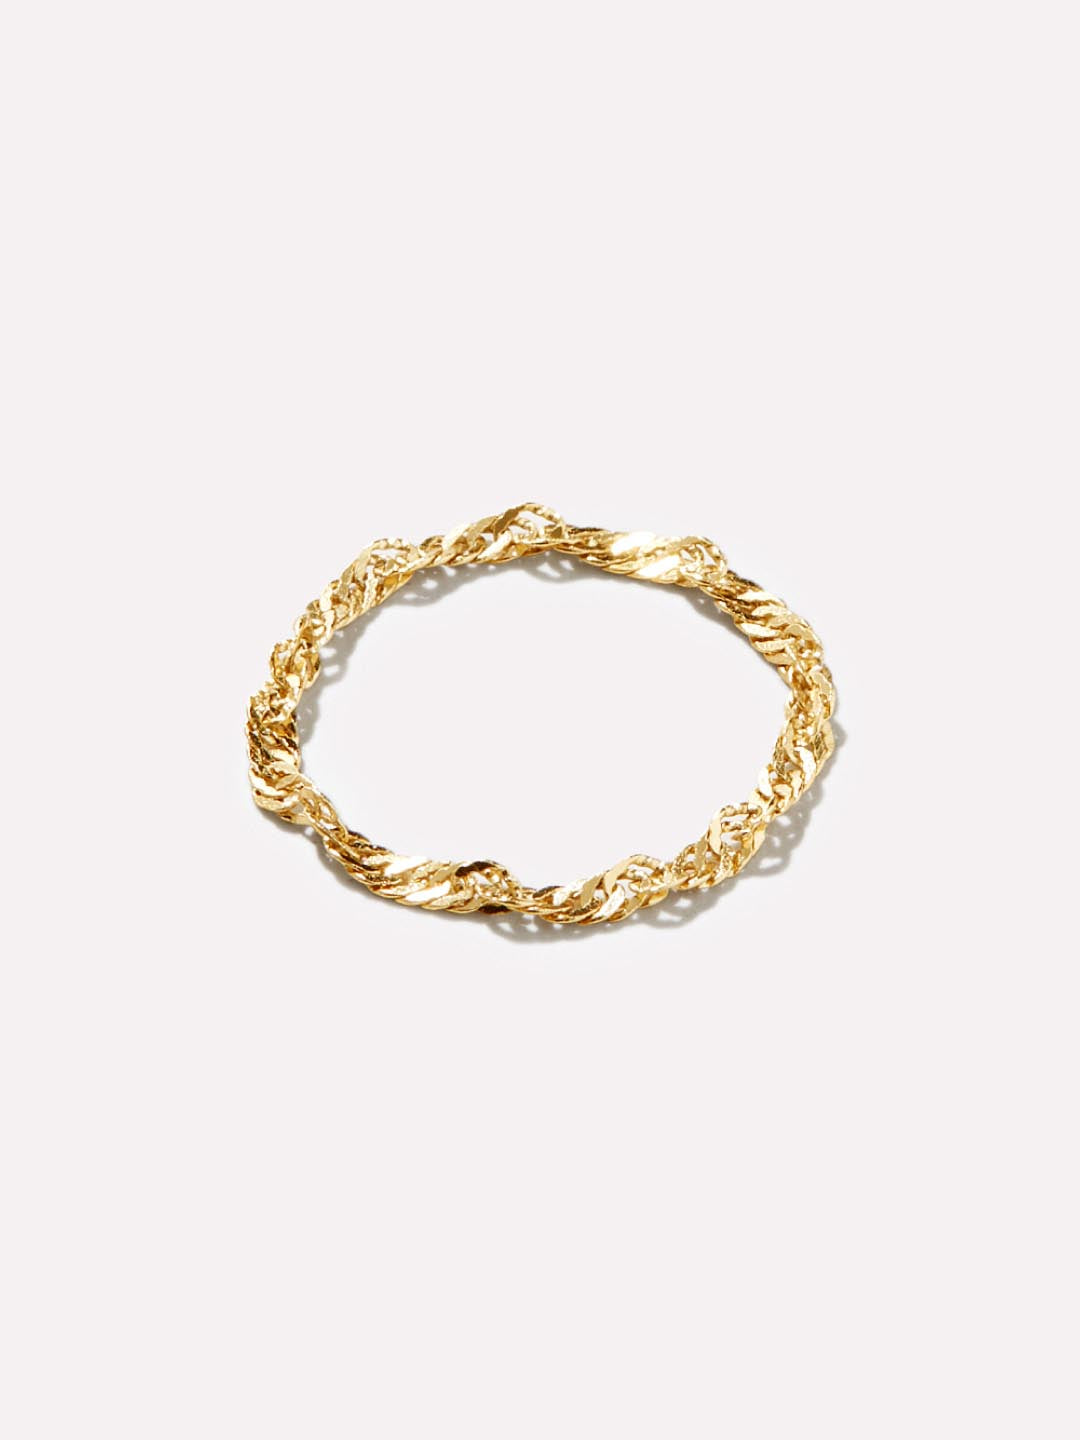 Ana Luisa Jewelry Rings Singapore Chain Ring Josie Gold new1